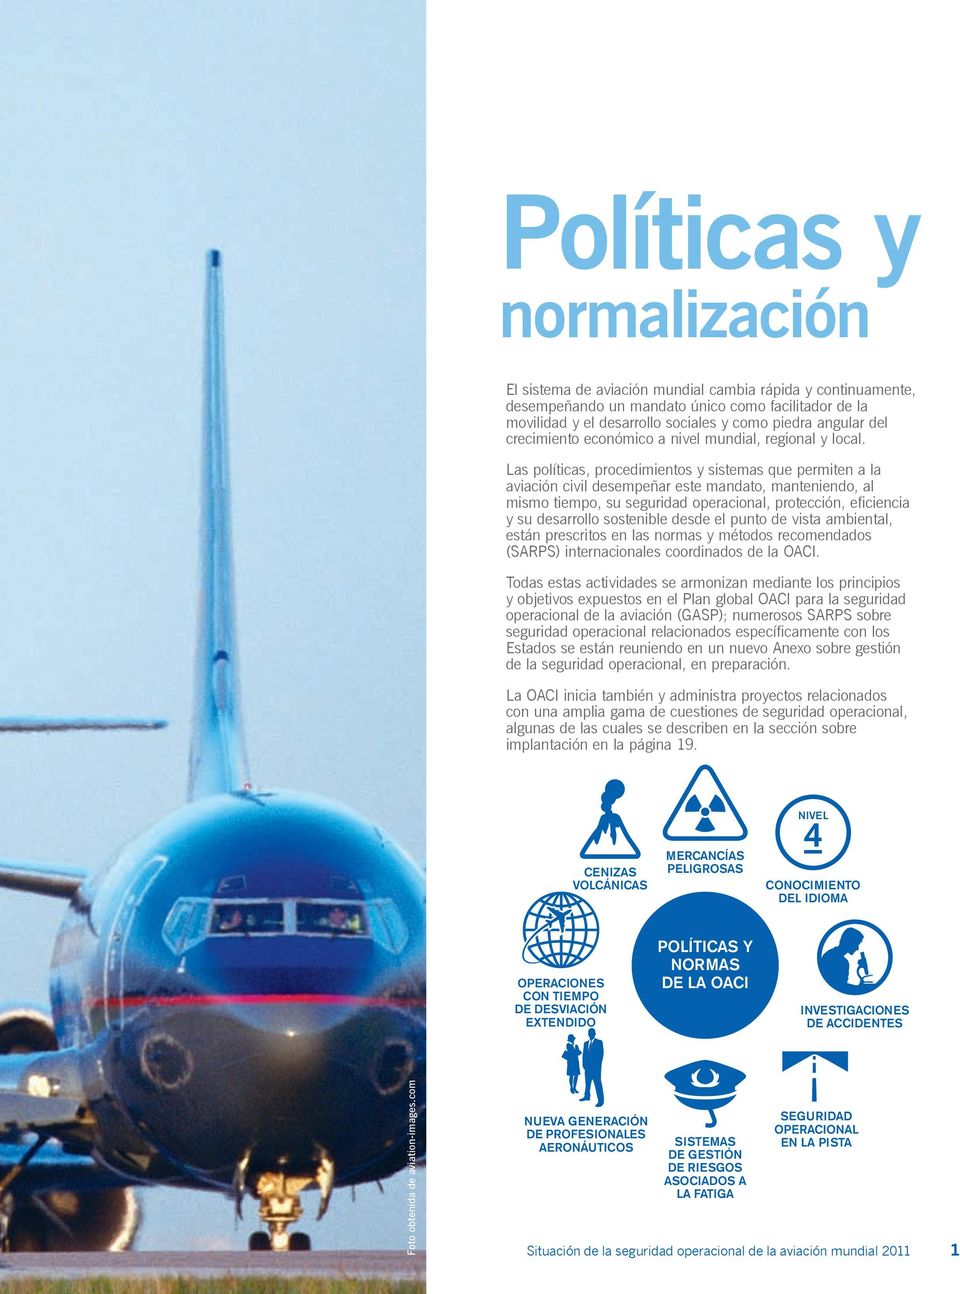 Las políticas, procedimientos y sistemas que permiten a la aviación civil desempeñar este mandato, manteniendo, al mismo tiempo, su seguridad operacional, protección, eficiencia y su desarrollo